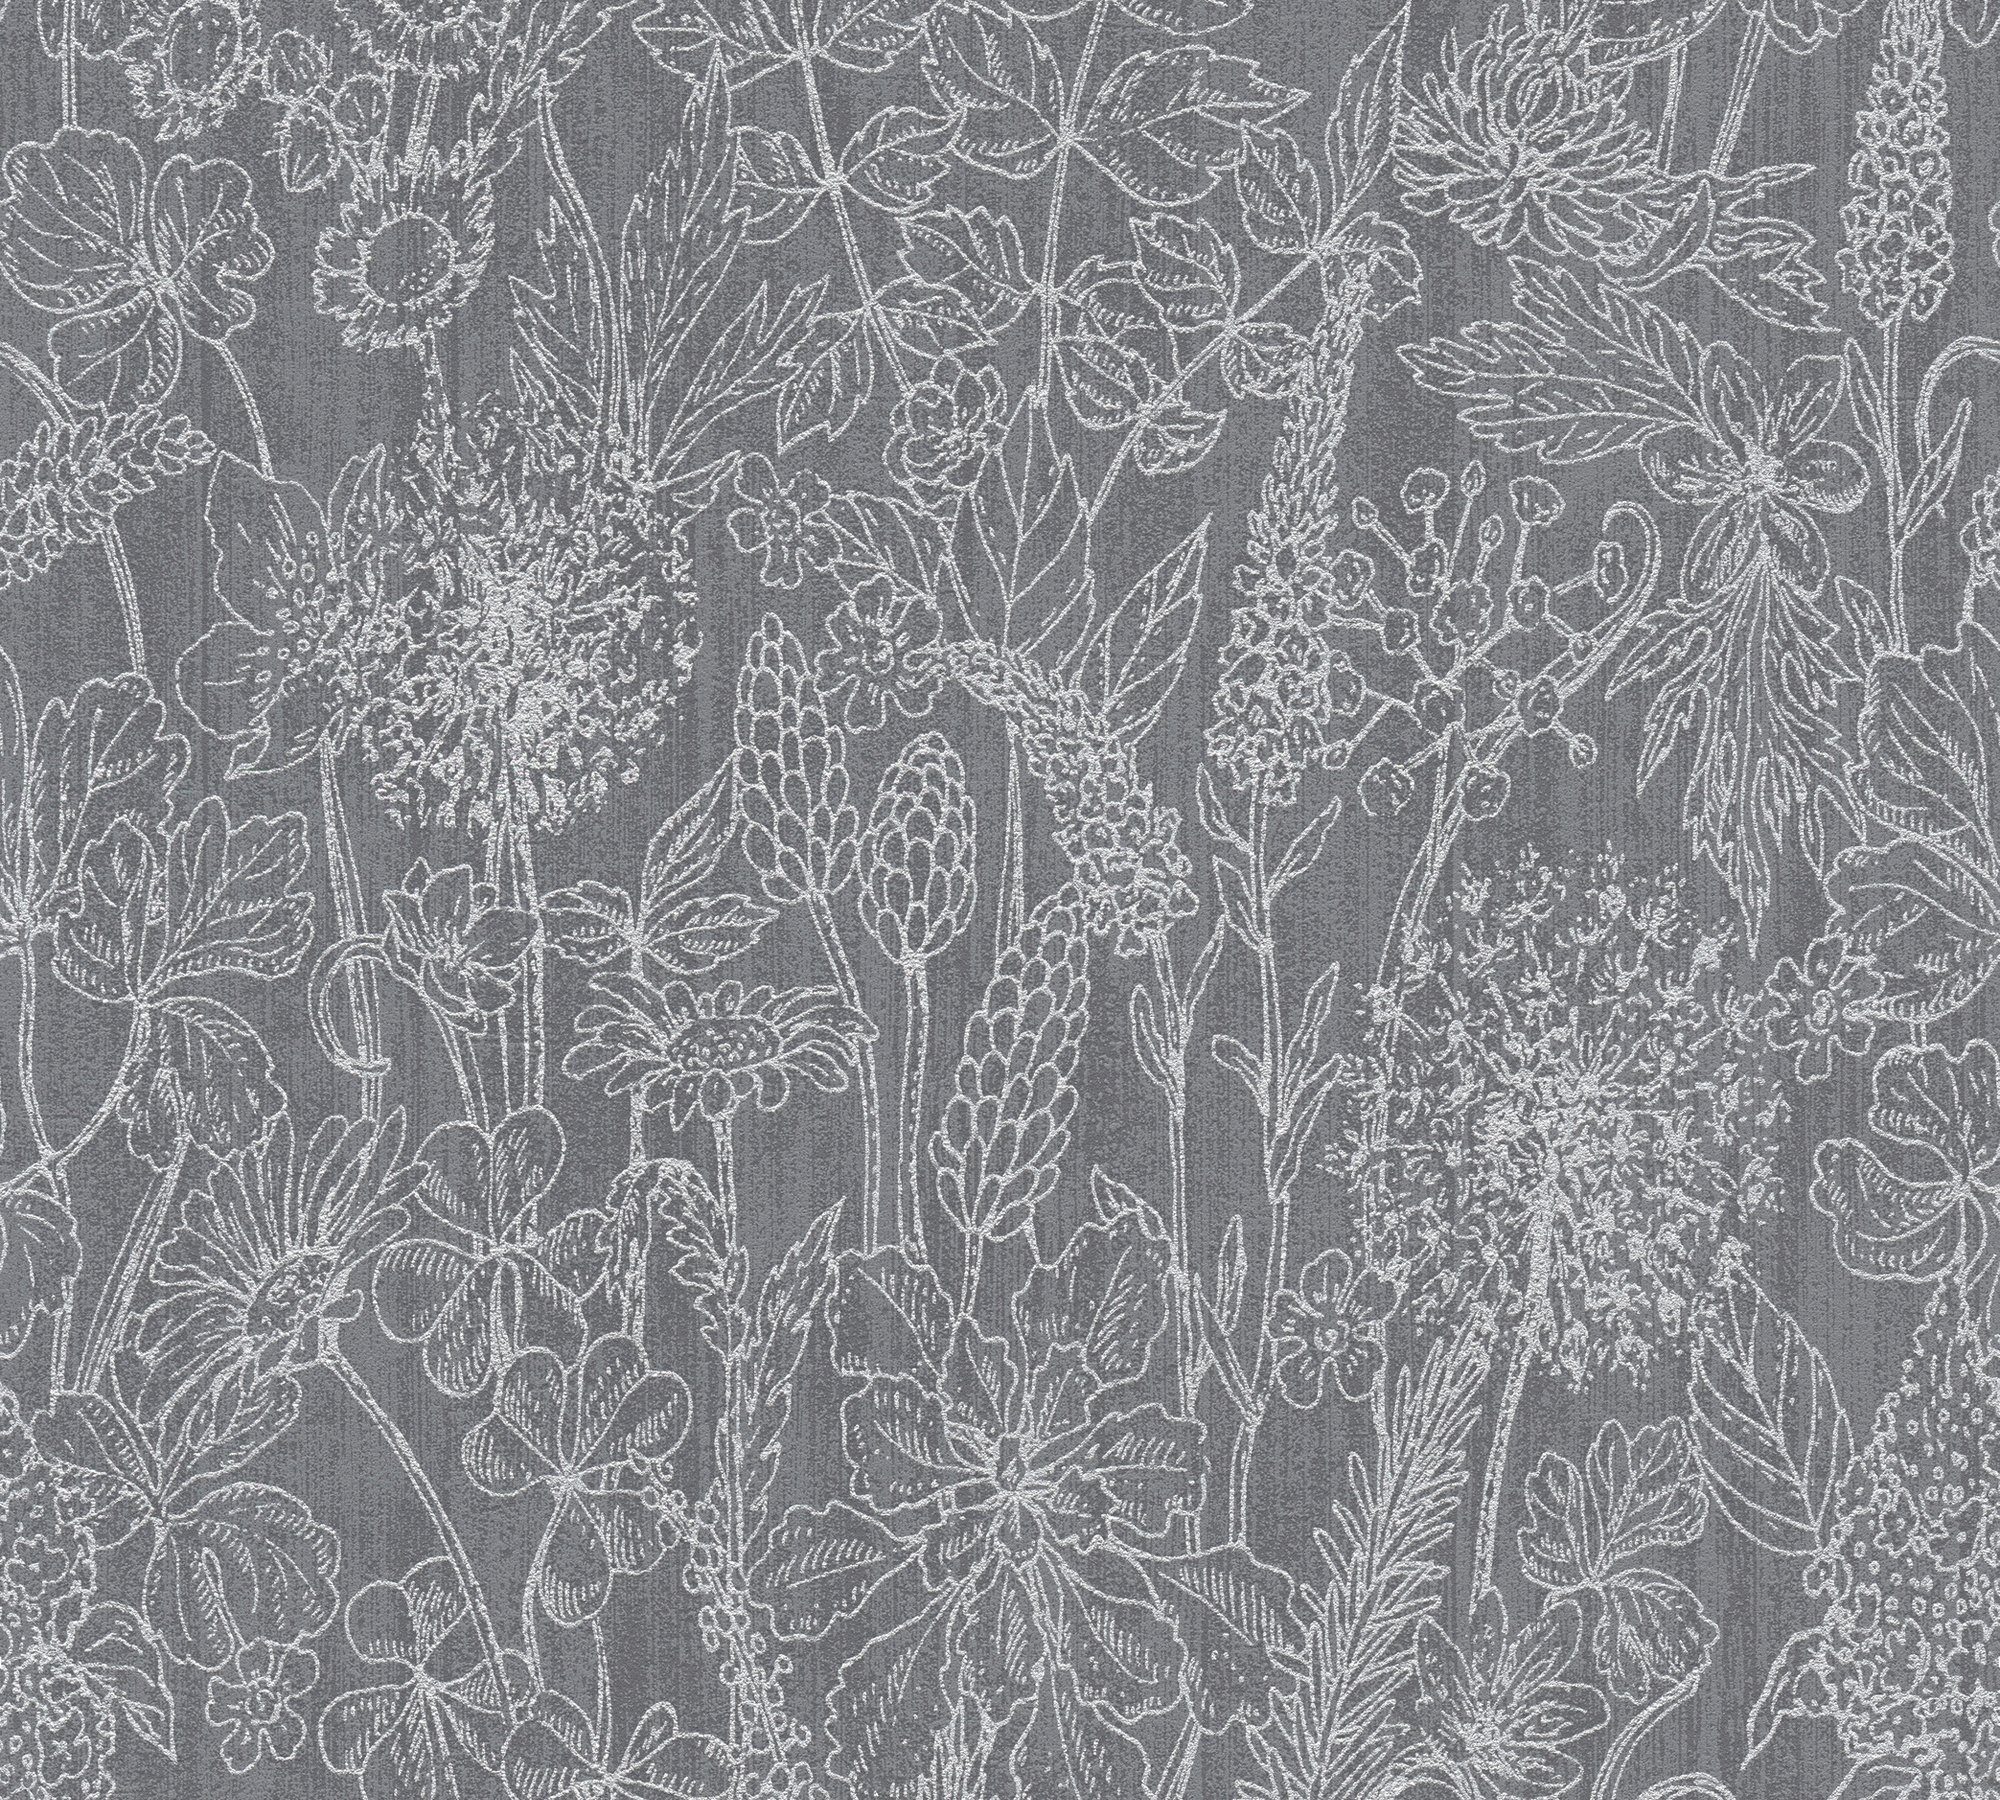 A.S. botanisch, Attractive, Vliestapete Tapete floral, Création schwarz/silber/grau Blumen Glitzertapete